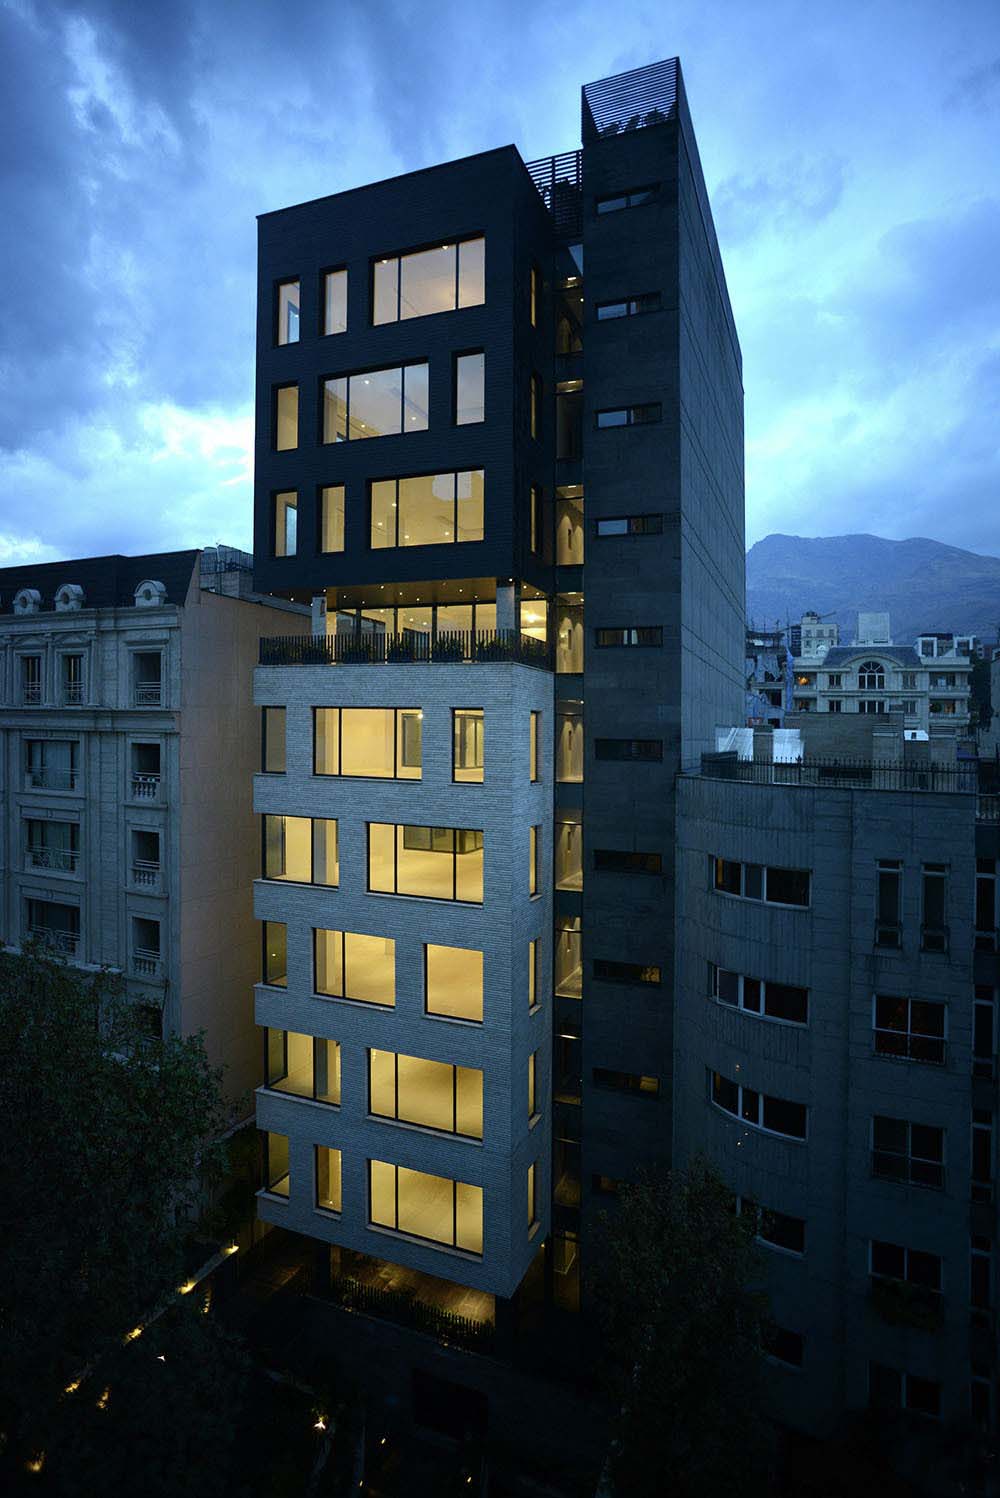 朗德黑兰bw公寓外部夜景实景图-朗德黑兰bw公寓第9张图片